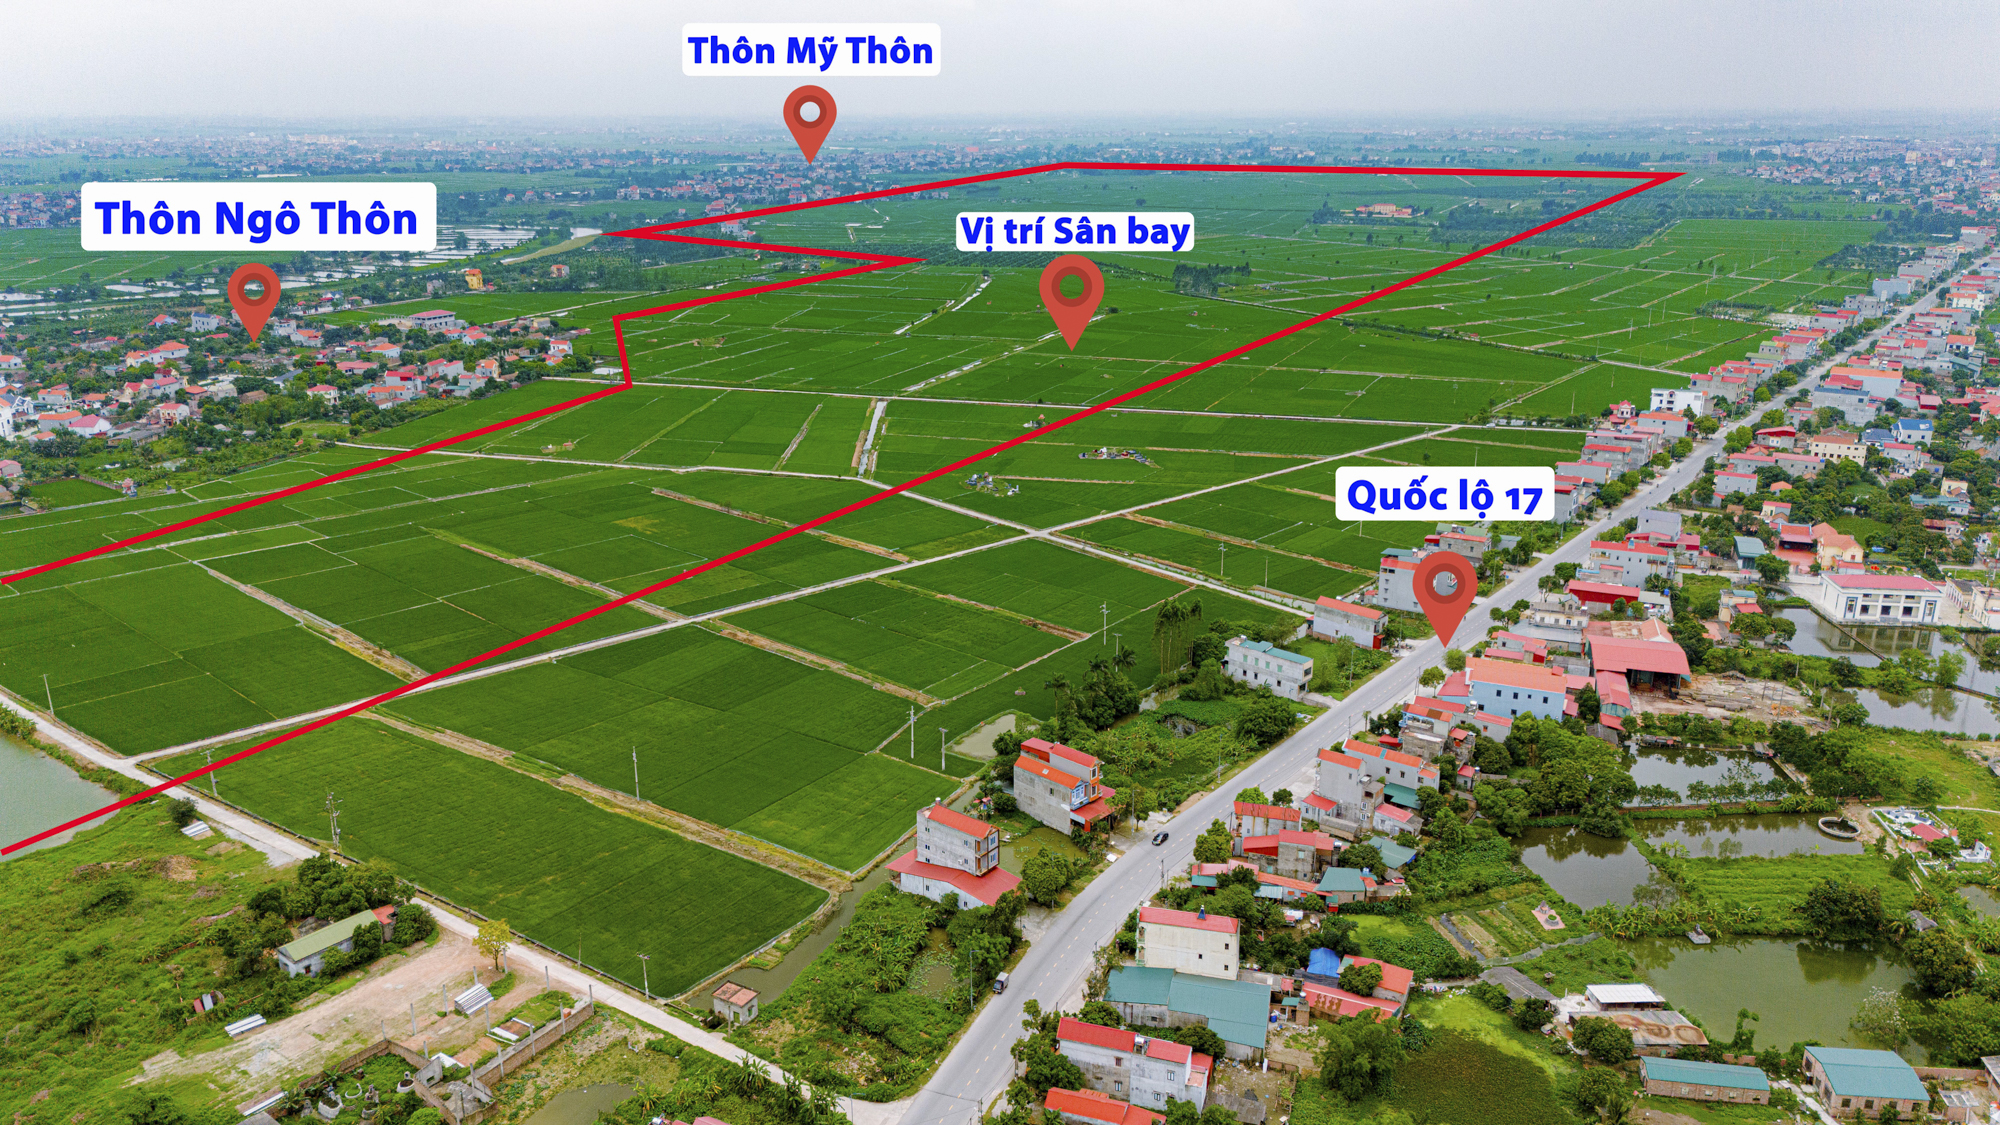 Toàn cảnh khu vực được quy hoạch làm sân bay đầu tiên của tỉnh Bắc Ninh, nằm giữa 4 thành phố, cách Hồ Gươm chỉ 40 km- Ảnh 2.